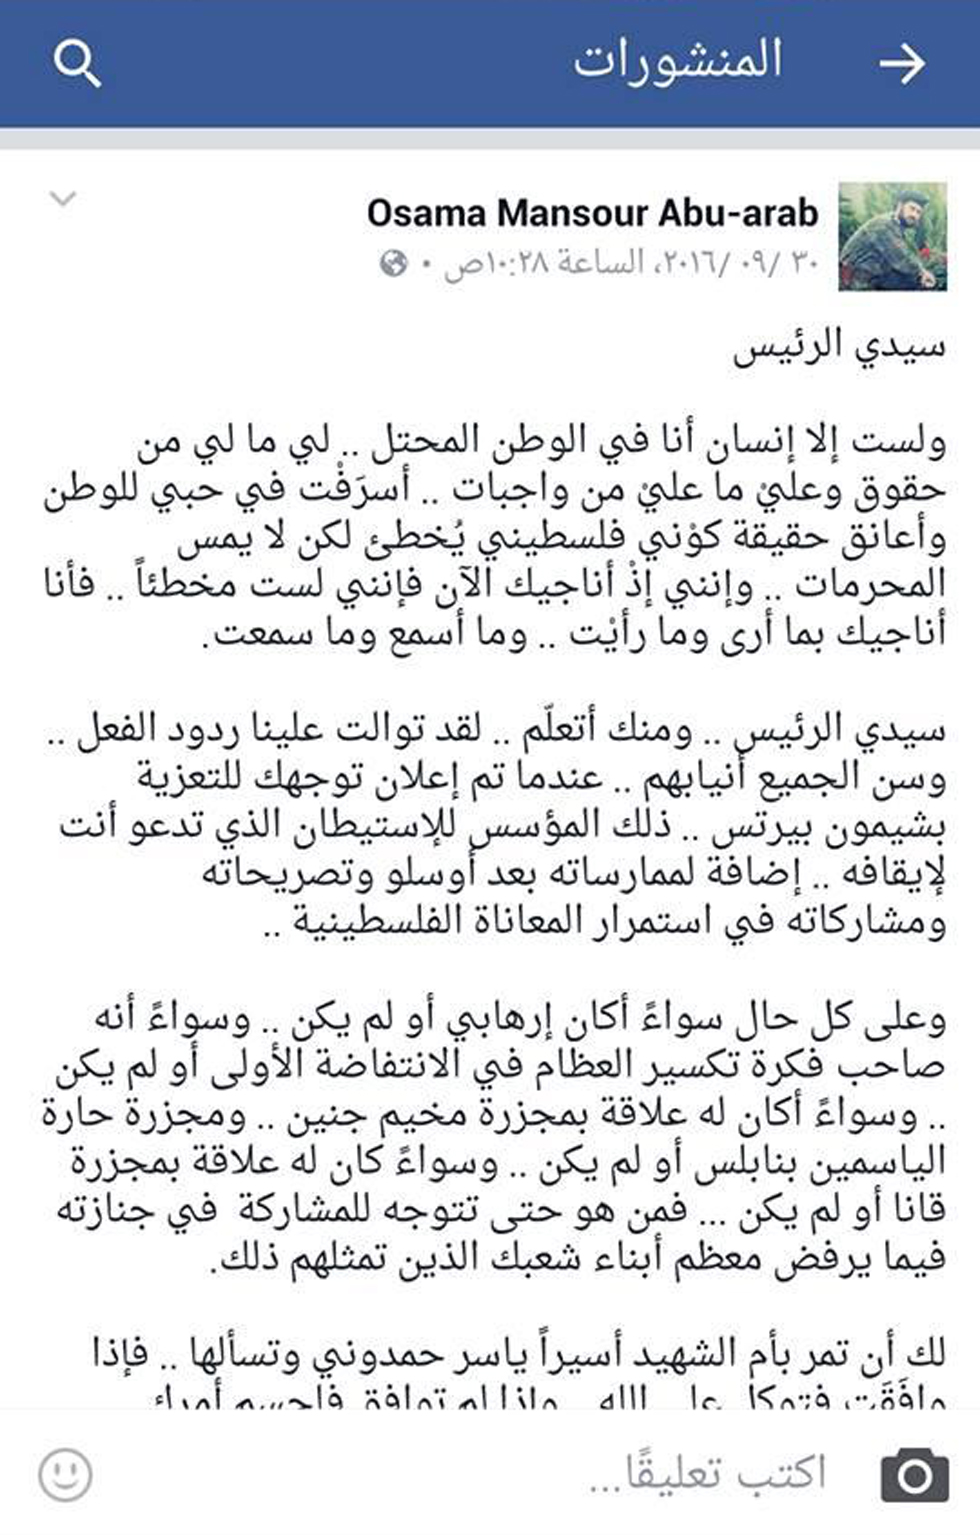 הפוסט שפרסם בפייסבוק נגד אבו מאזן ()